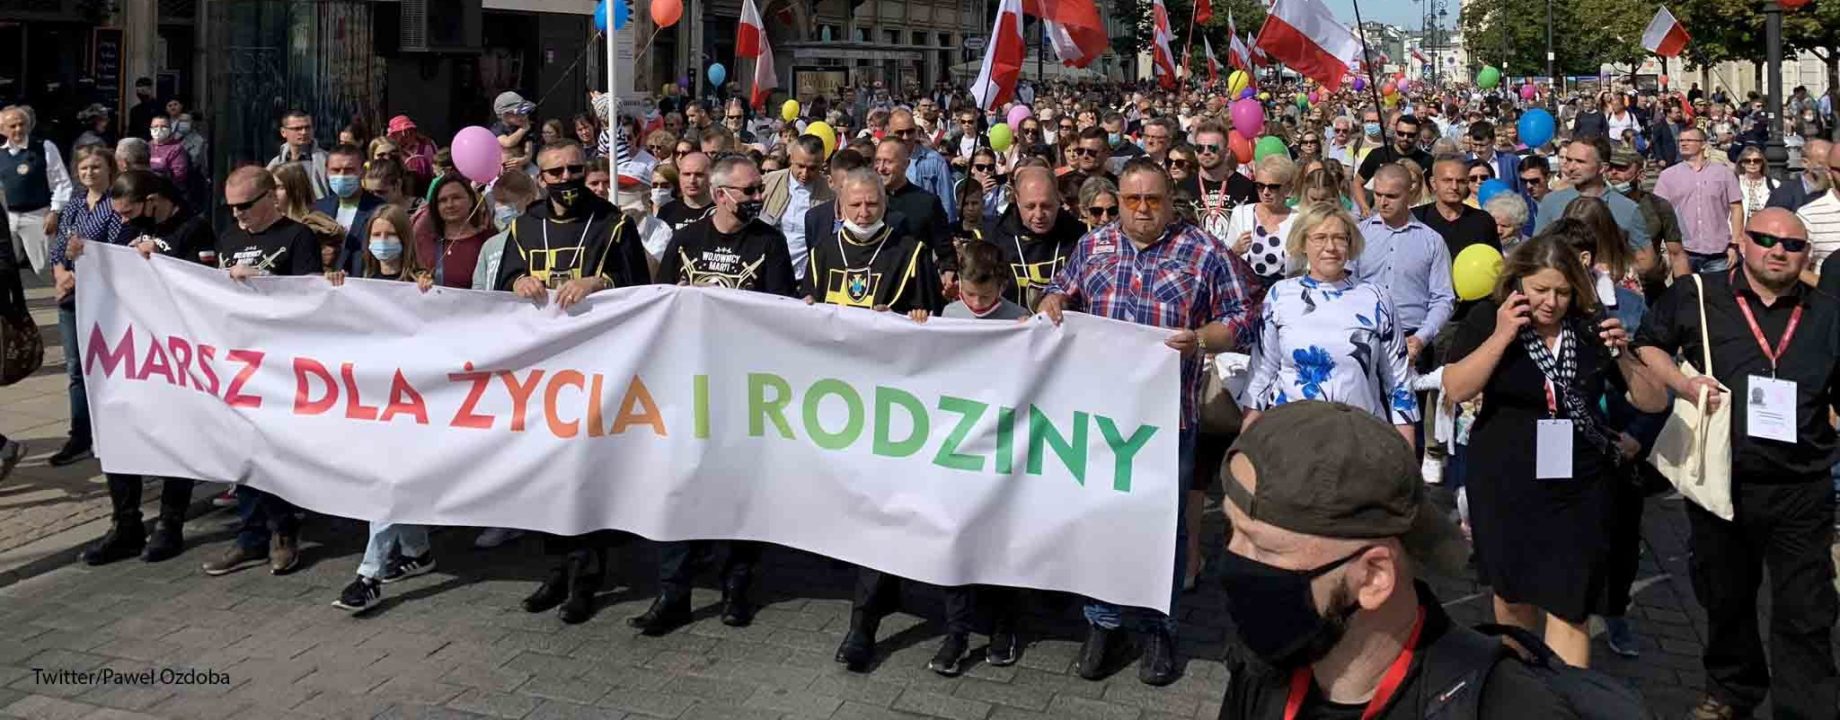 lengyelország családok menete remix news